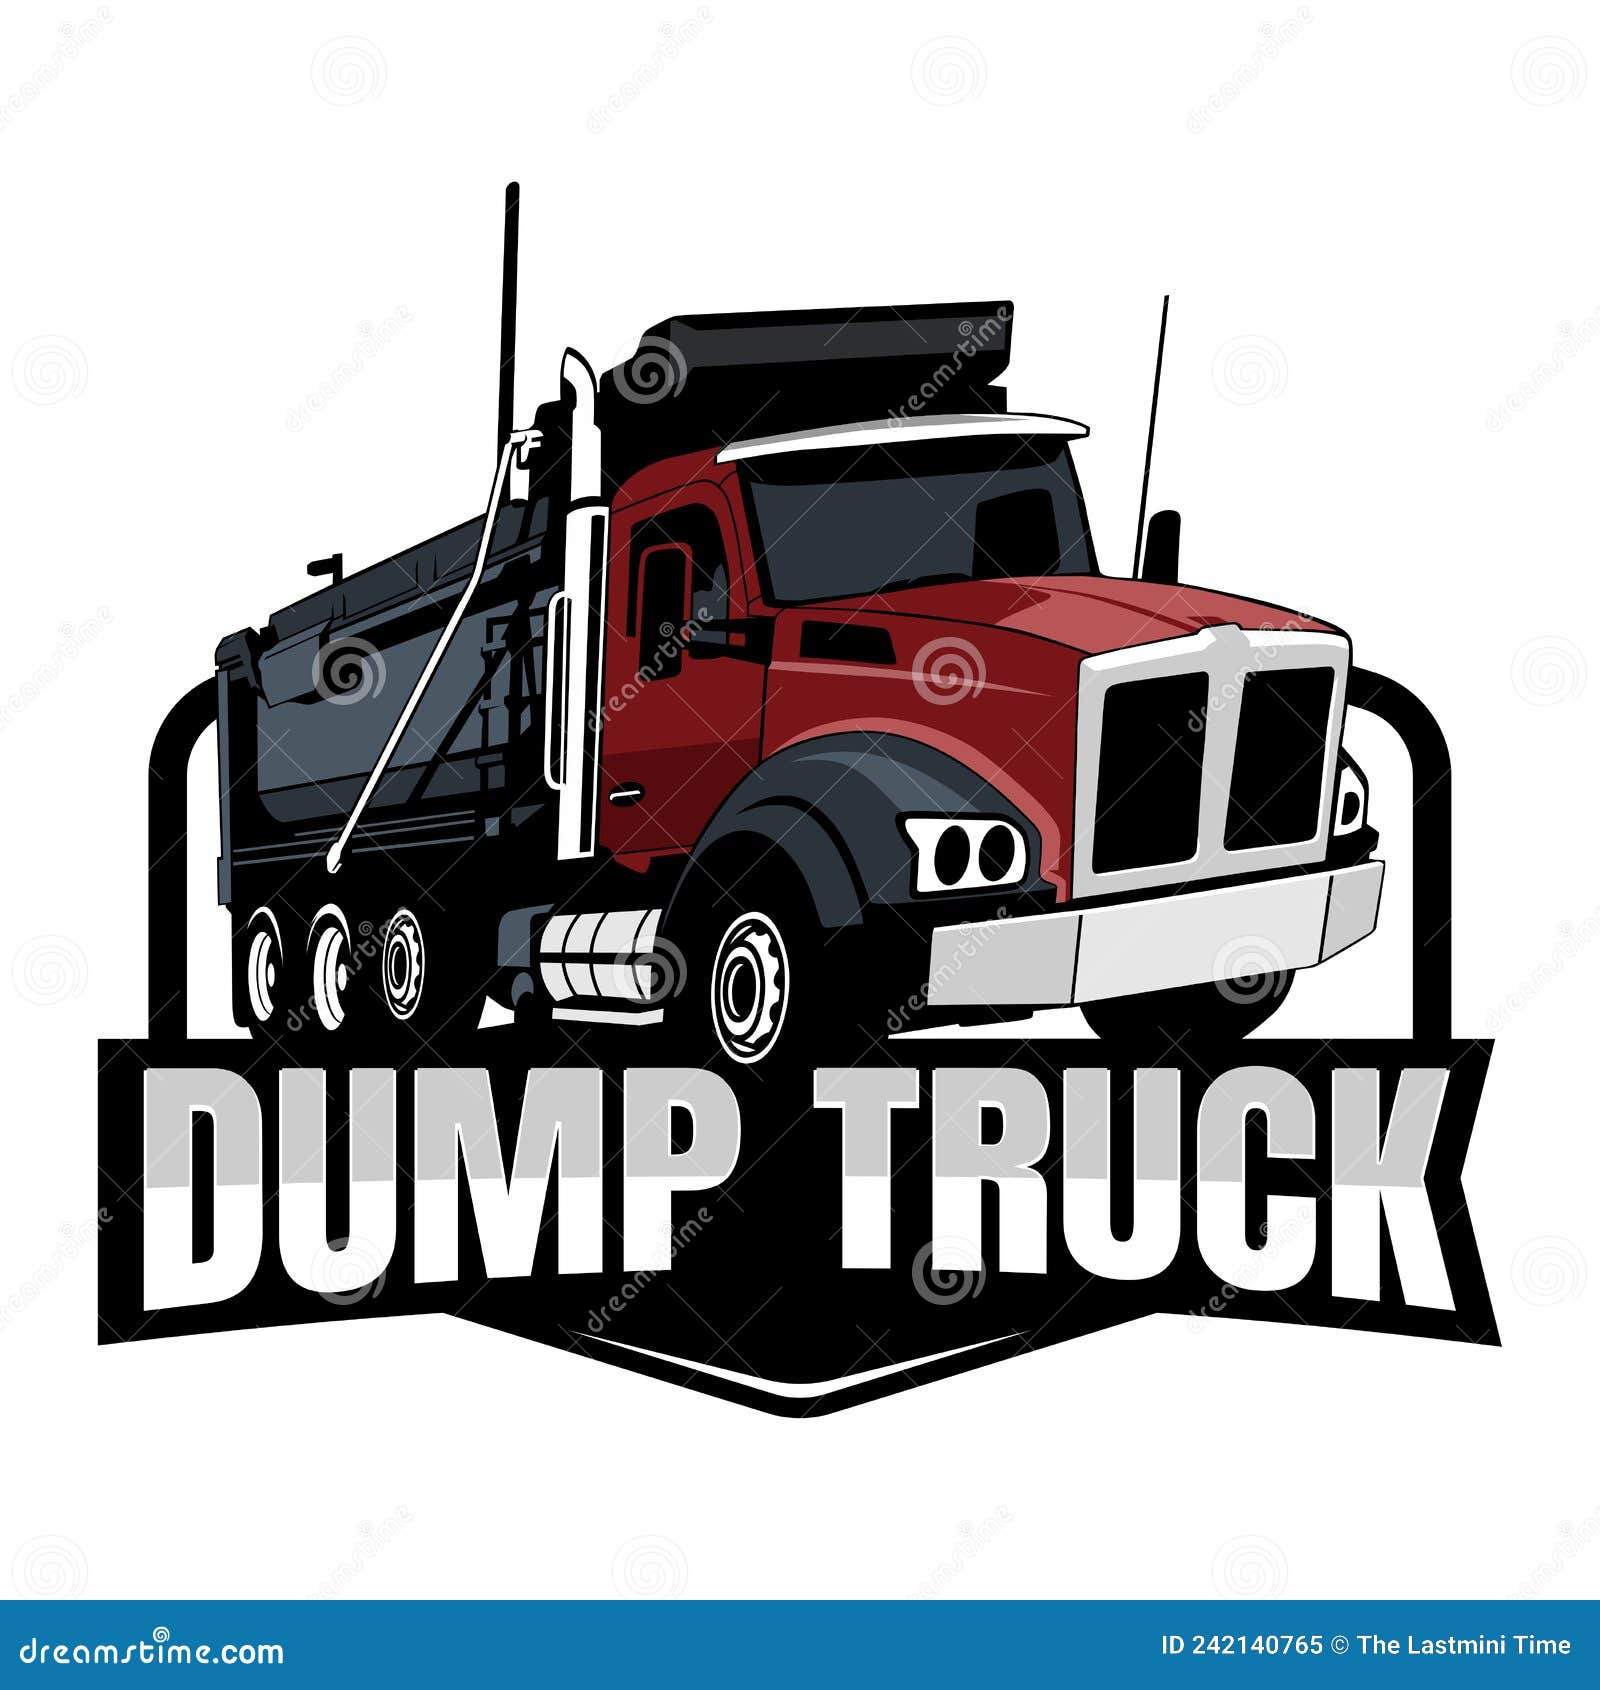 dump truck logo ideas 2